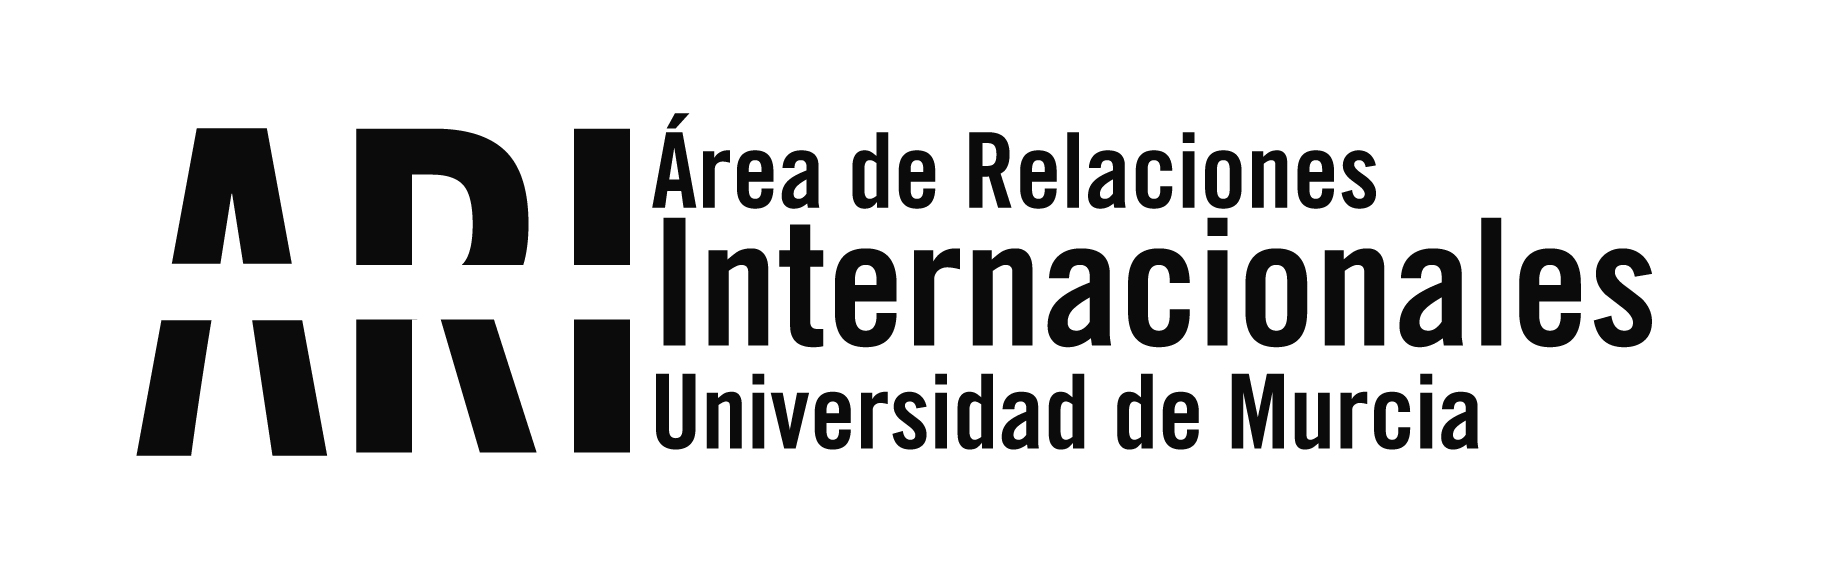 Actos conmemorativos en Murcia por el 9 de mayo Día de Europa - Área de Relaciones Internacionales